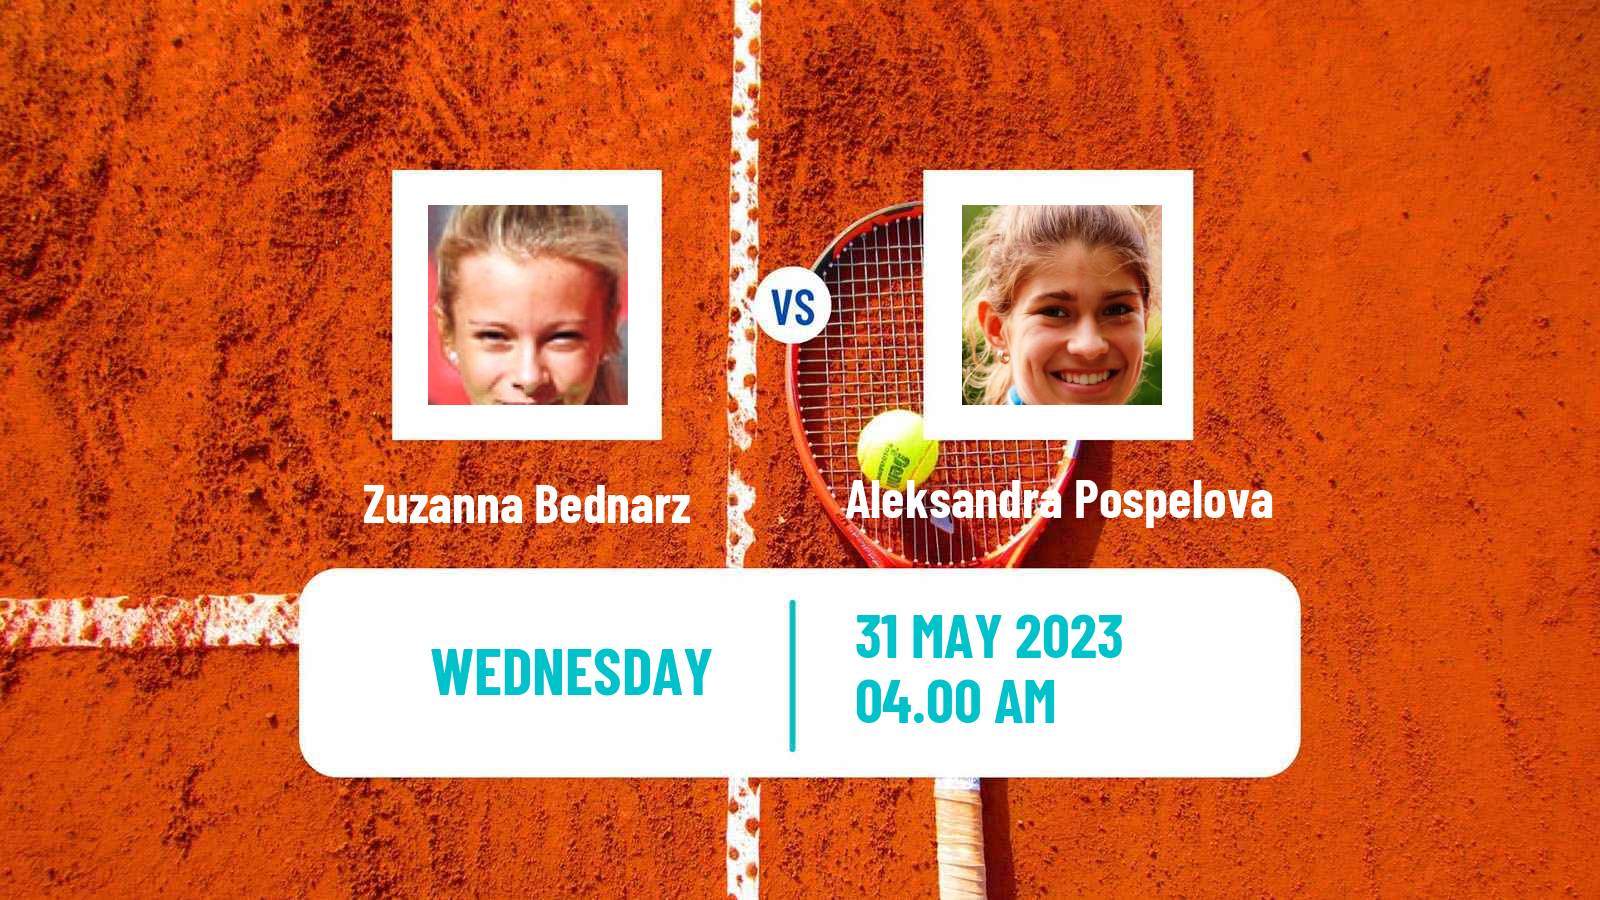 Tennis ITF W15 Kursumlijska Banja 6 Women Zuzanna Bednarz - Aleksandra Pospelova